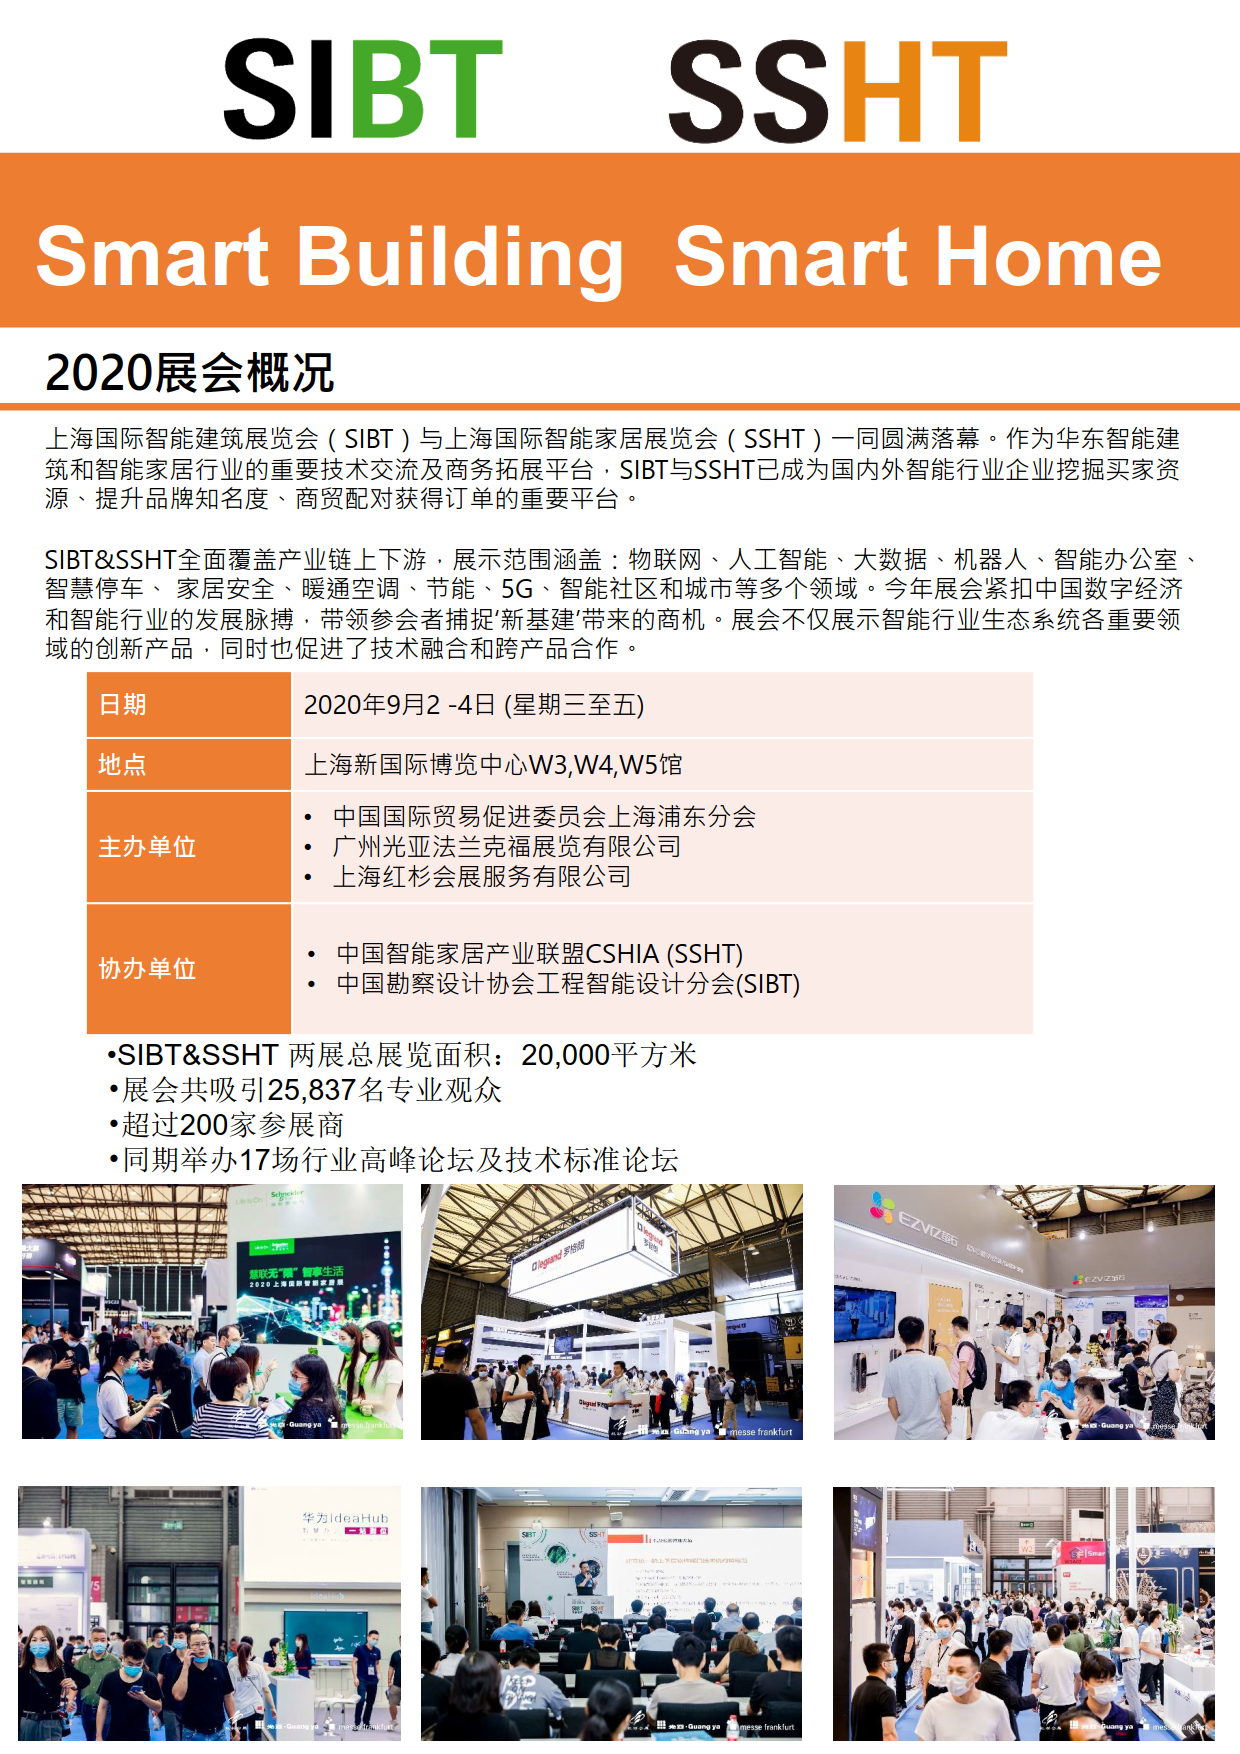 Shanghai Internatio<i></i>nal Smart Home Exhibition SSHT